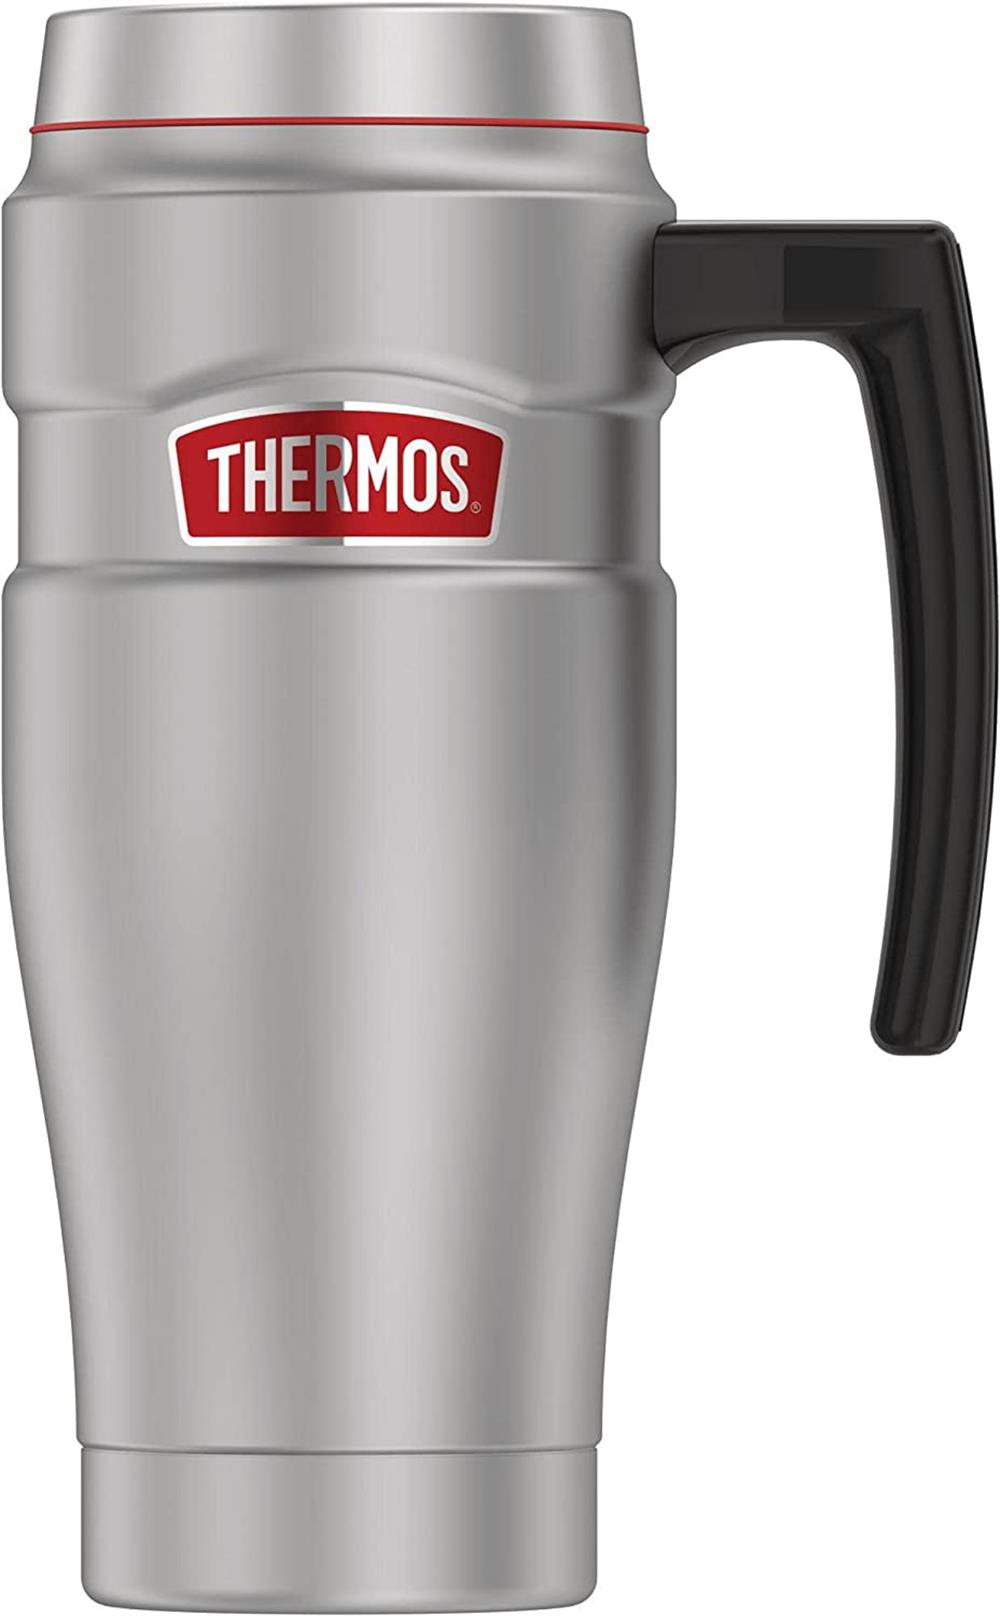 Thermos King Travel Mug, 16 oz